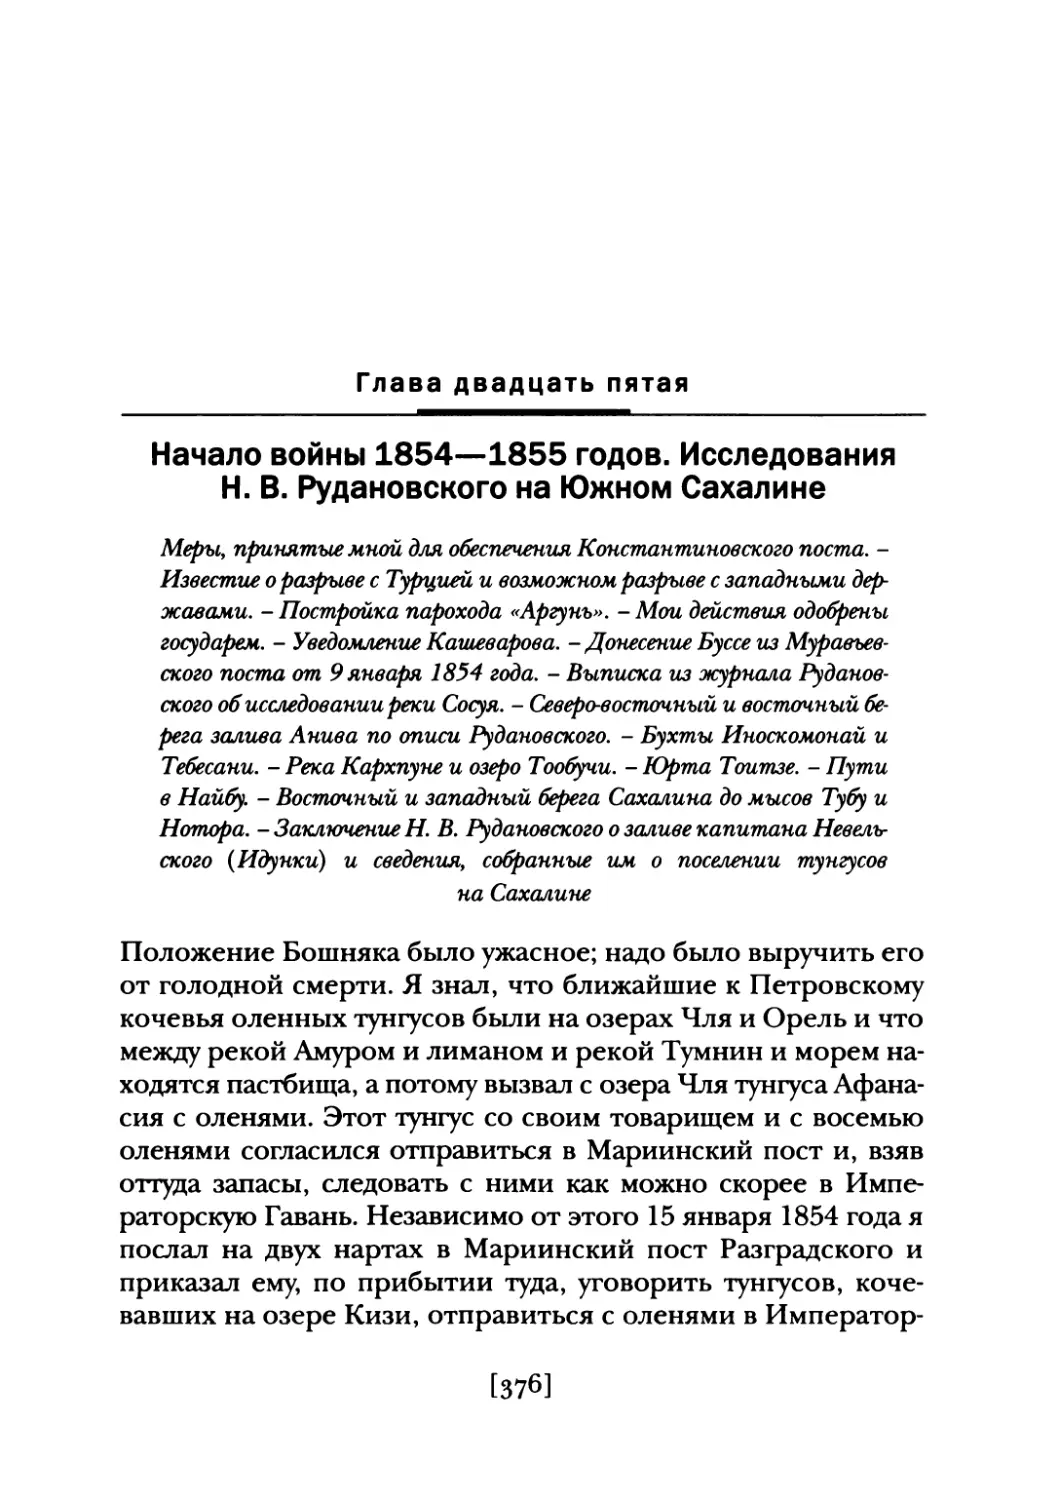 Глава  двадцать  пятая.  Начало  войны  1854—1855  годов. Исследования  Н.  В.  Рудановского  на  Южном Сахалине